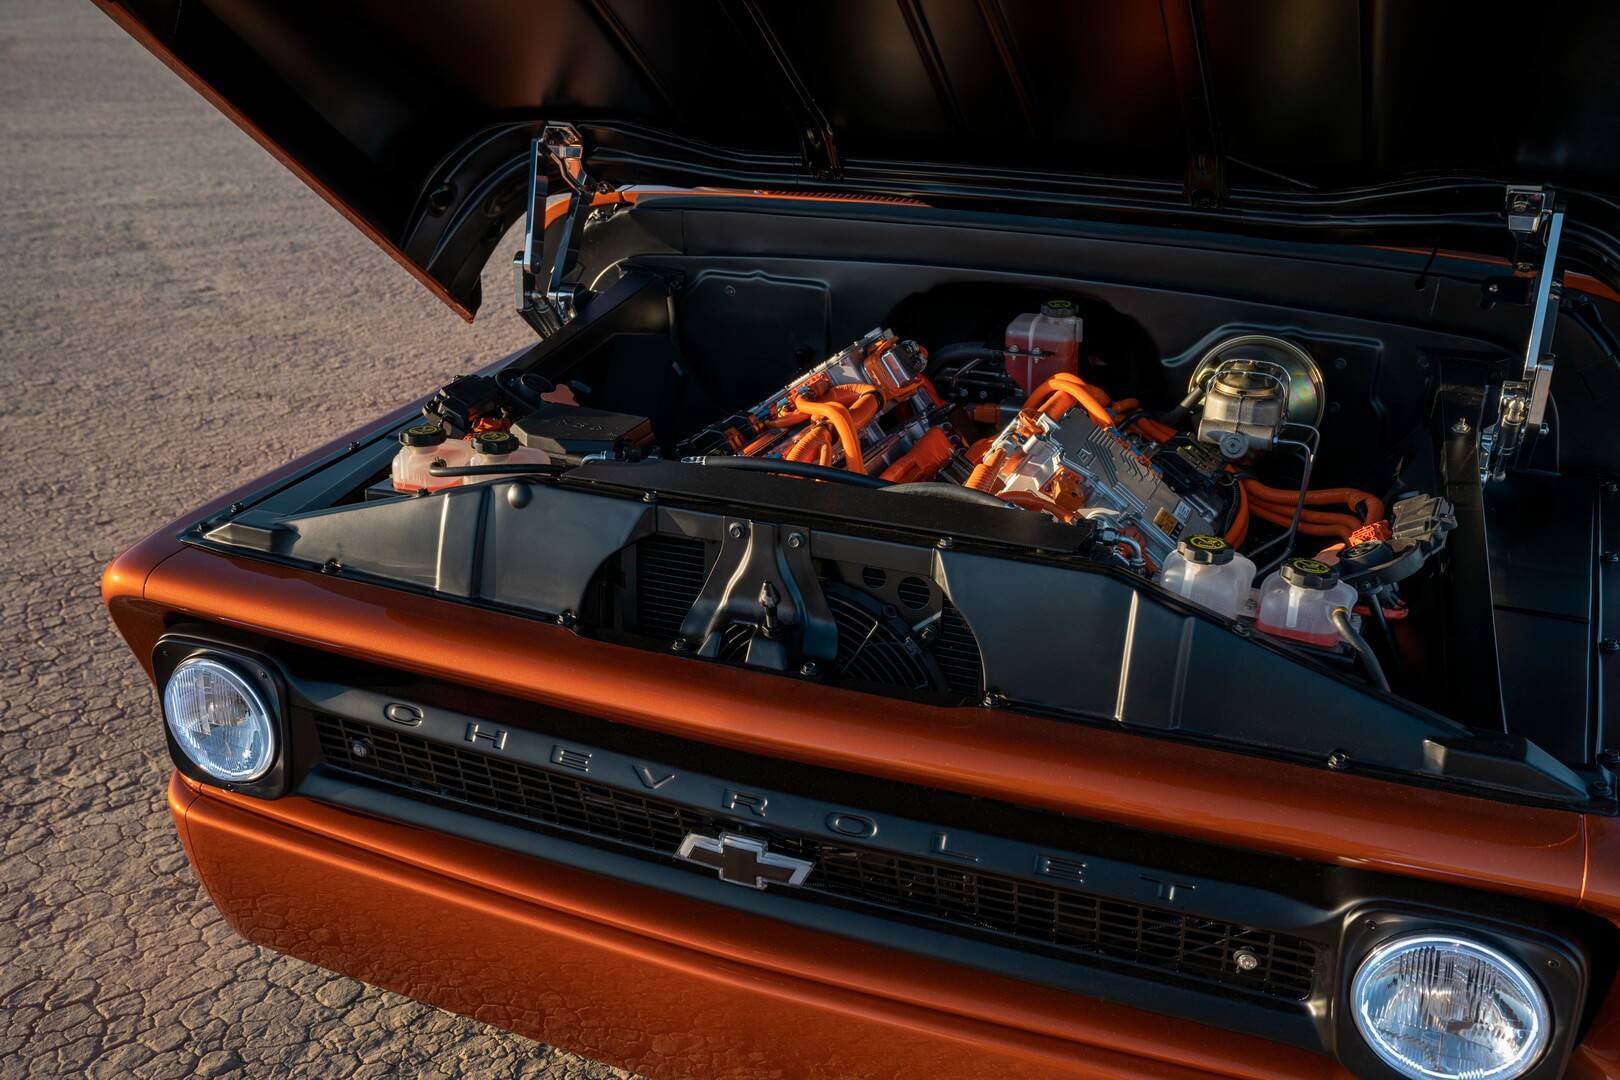 Двигатель Chevrolet Performance (eCrate), состоящий из двух силовых агрегатов Bolt